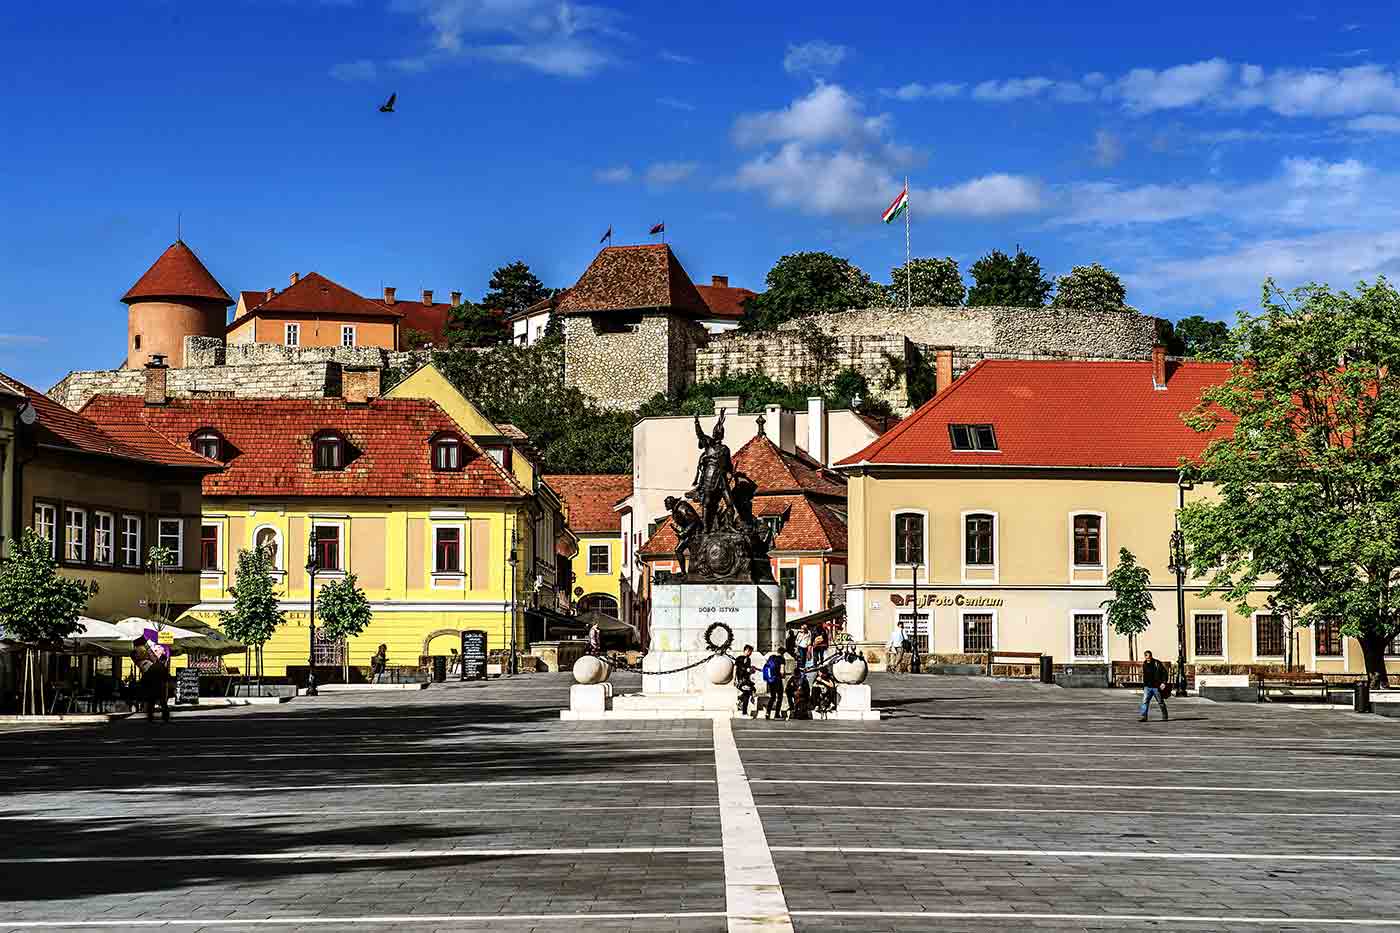 Dobó István Square